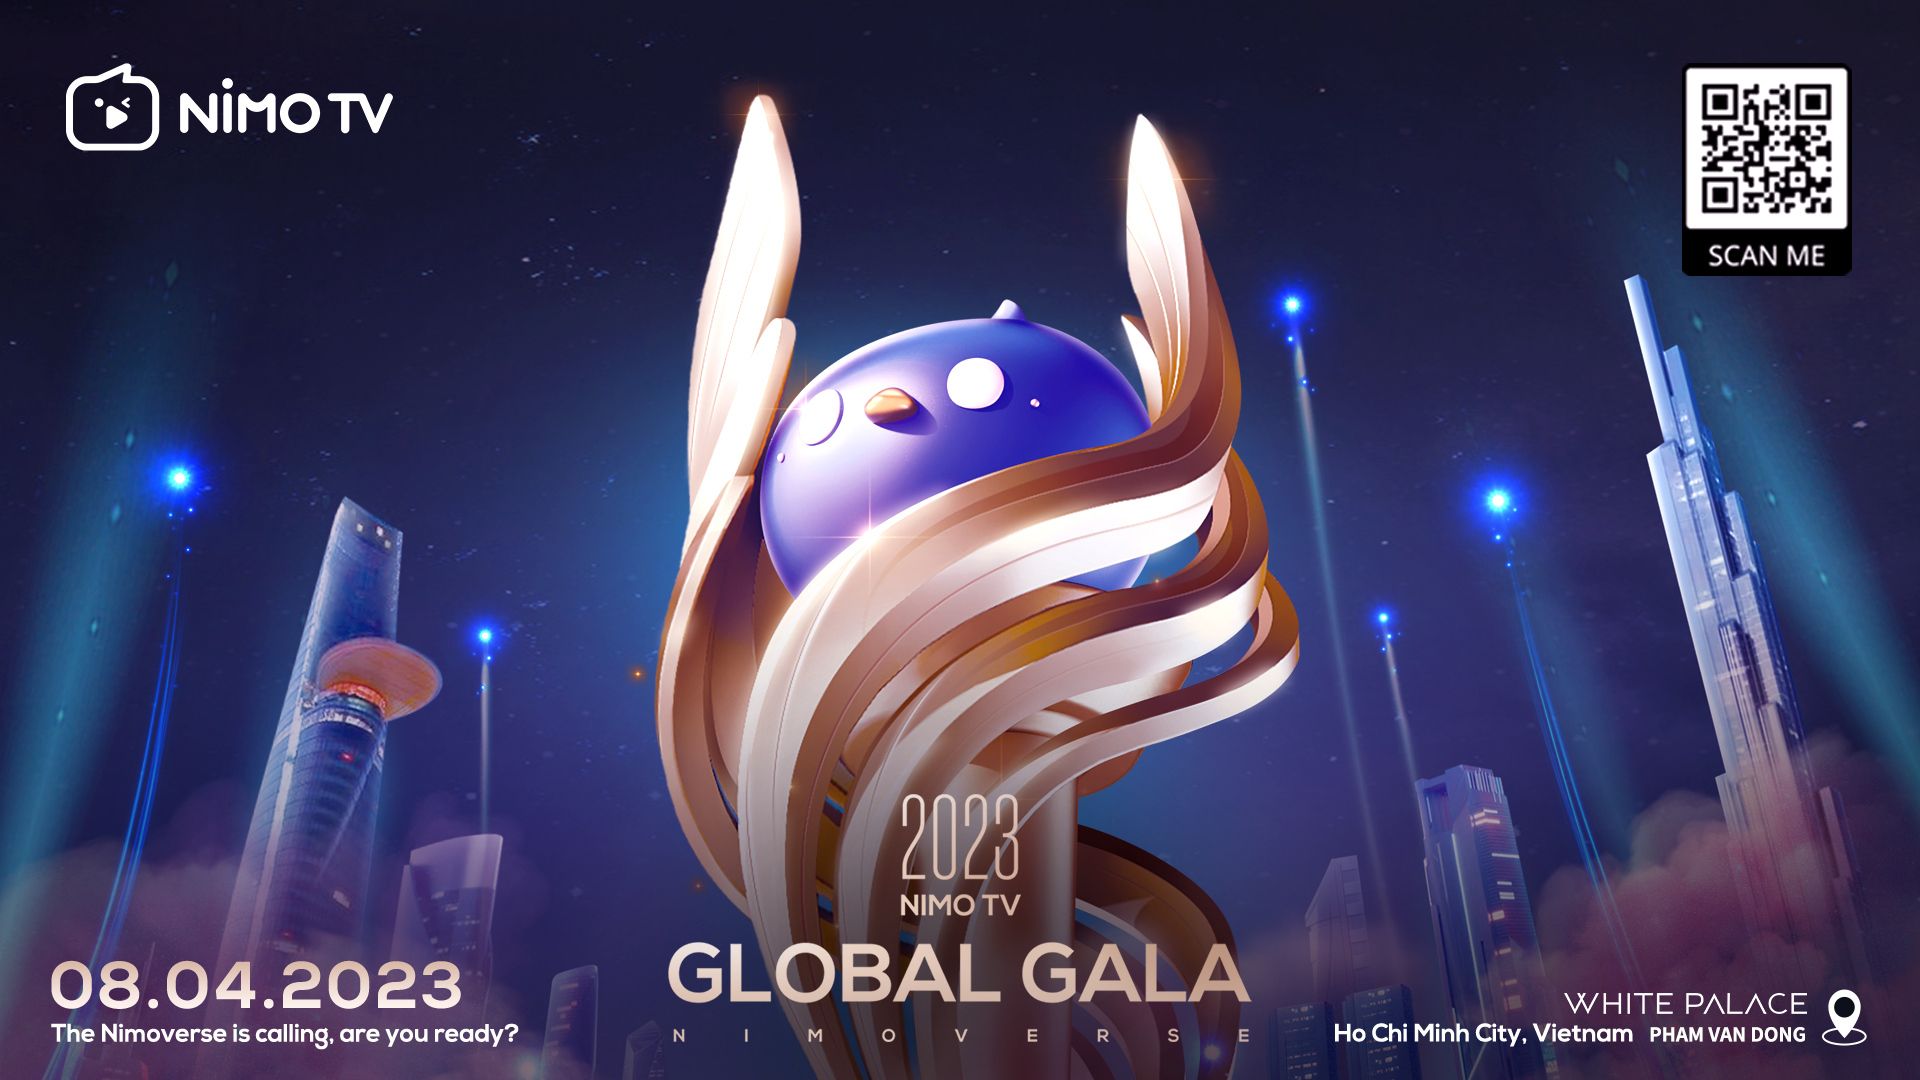 NimoTV Global Gala 2023 lần đầu tiên tổ chức tại Việt Nam, trao thưởng cho các streamer xuất sắc trên phạm vi toàn cầu - ảnh 1